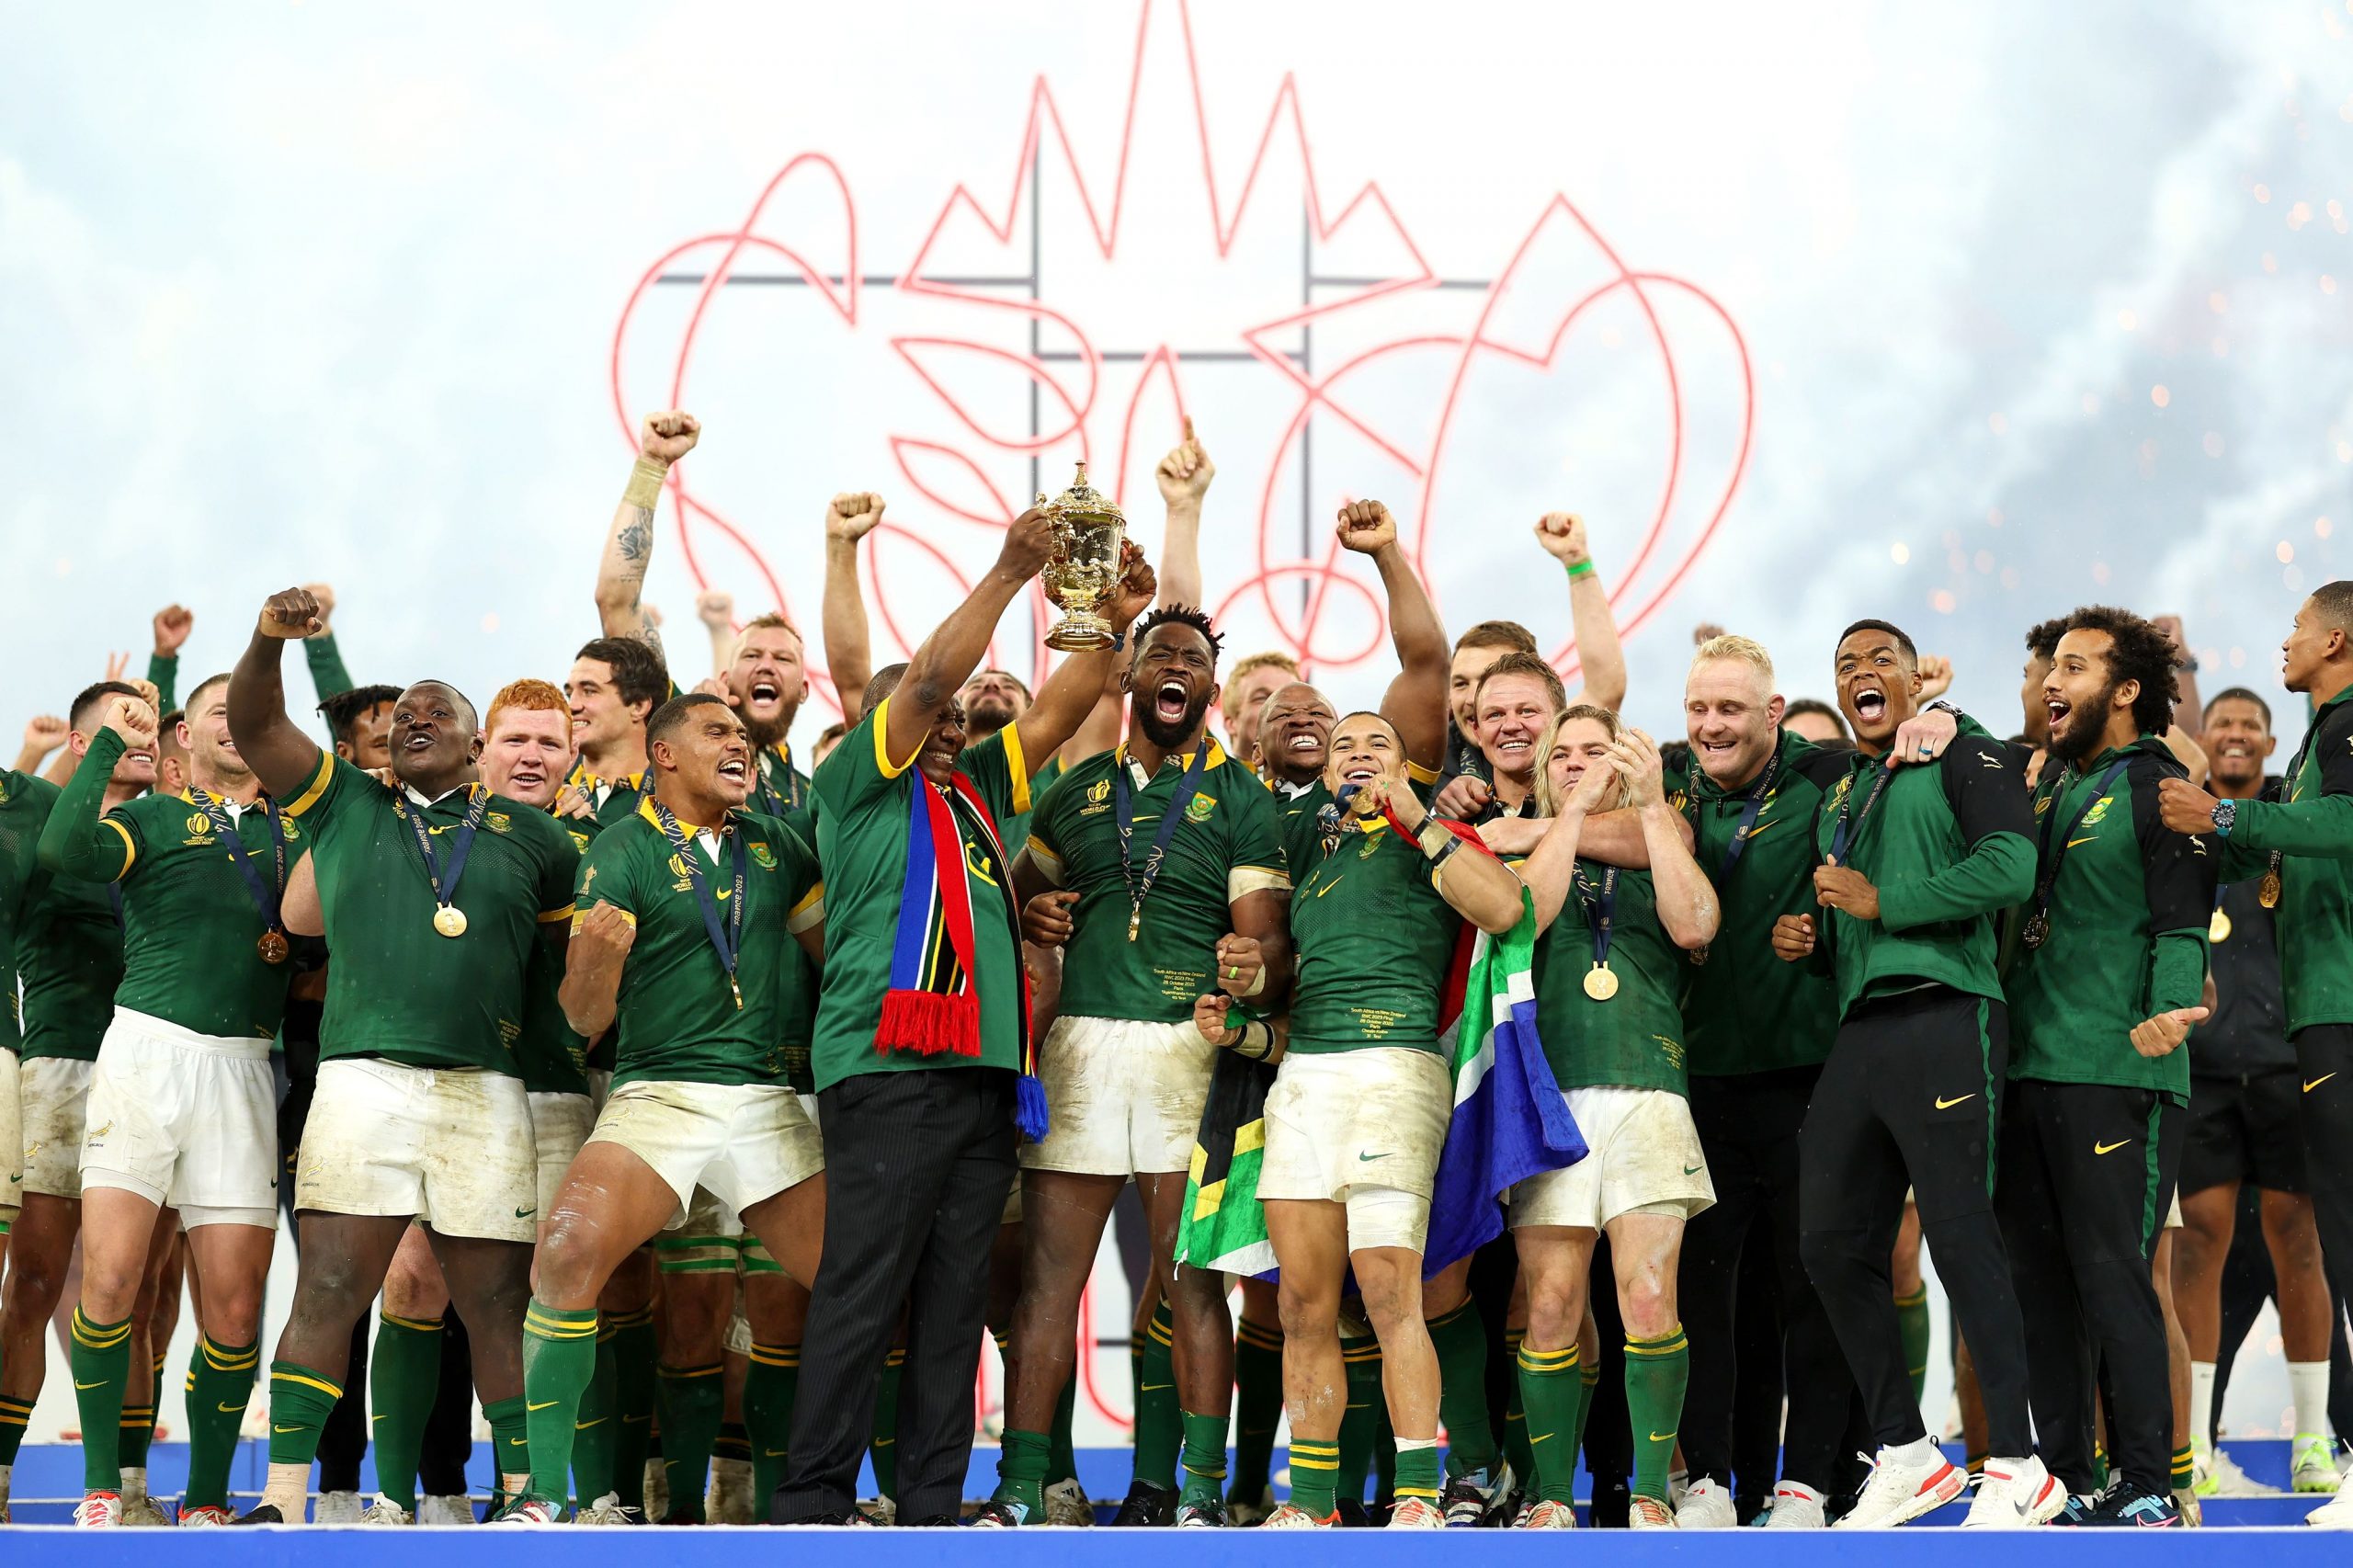 Maior clássico do rugby mundial decidirá o título da Copa do Mundo nesse  sábado: All Blacks contra Springboks – Confederação Brasileira de Rugby